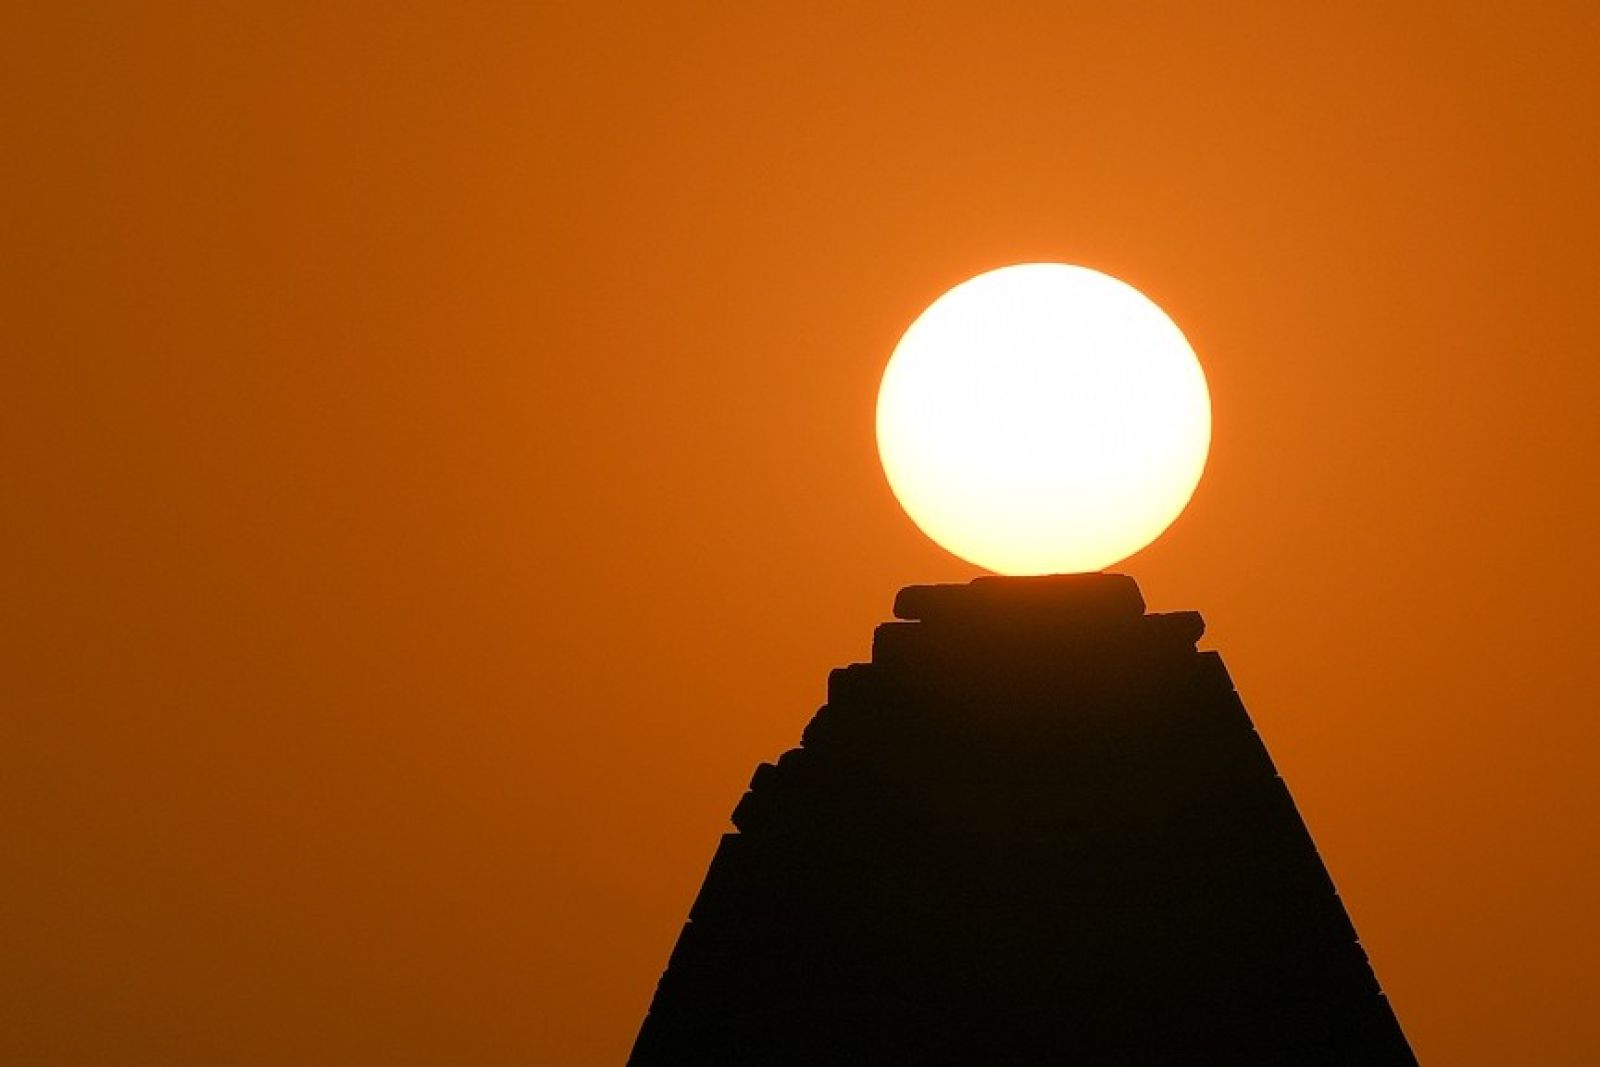 10. Die Sonne landet auf einer Pyramide